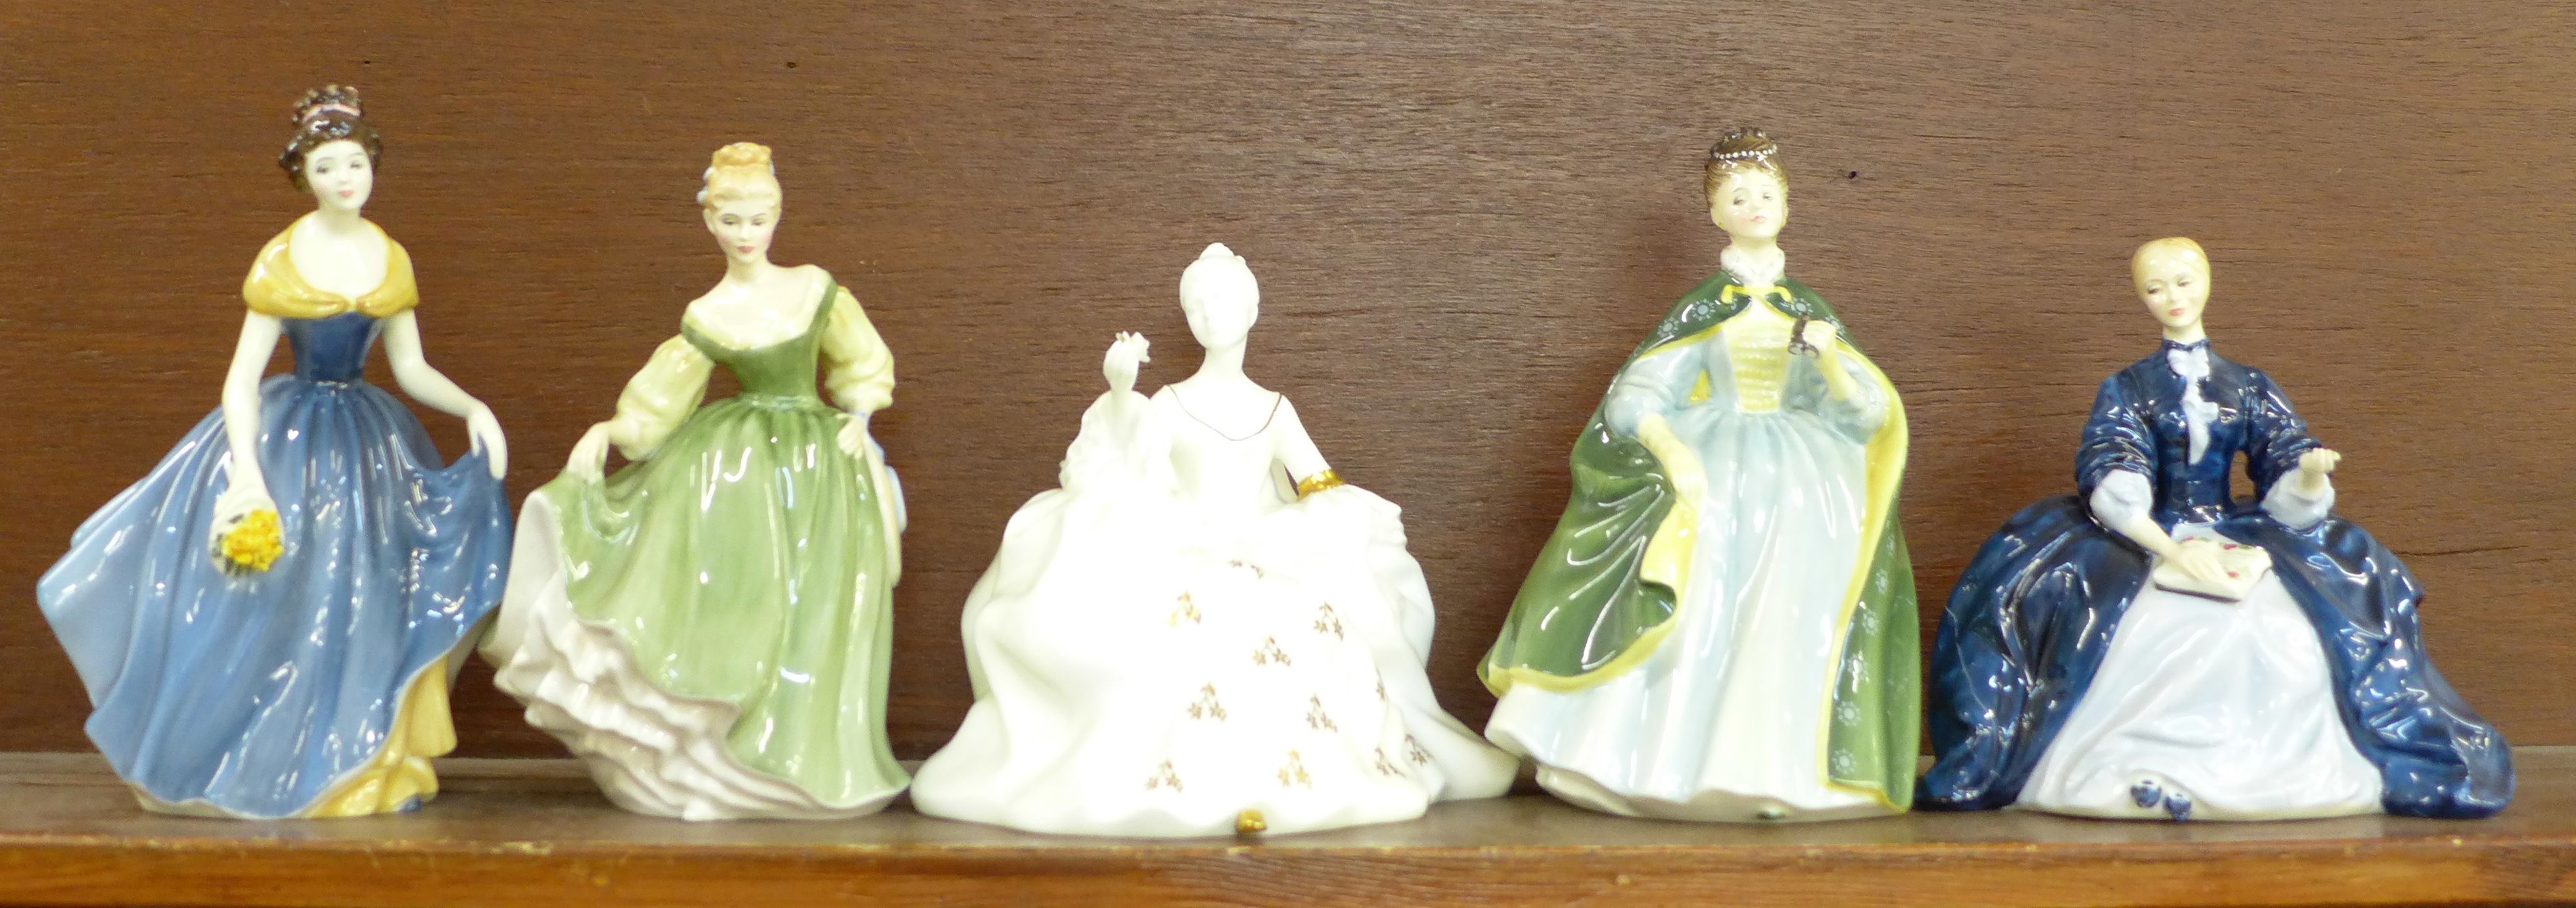 Five Royal Doulton figures; Antoinette, Premiere, Laurianne, a/f, Melanie and Fair Lady